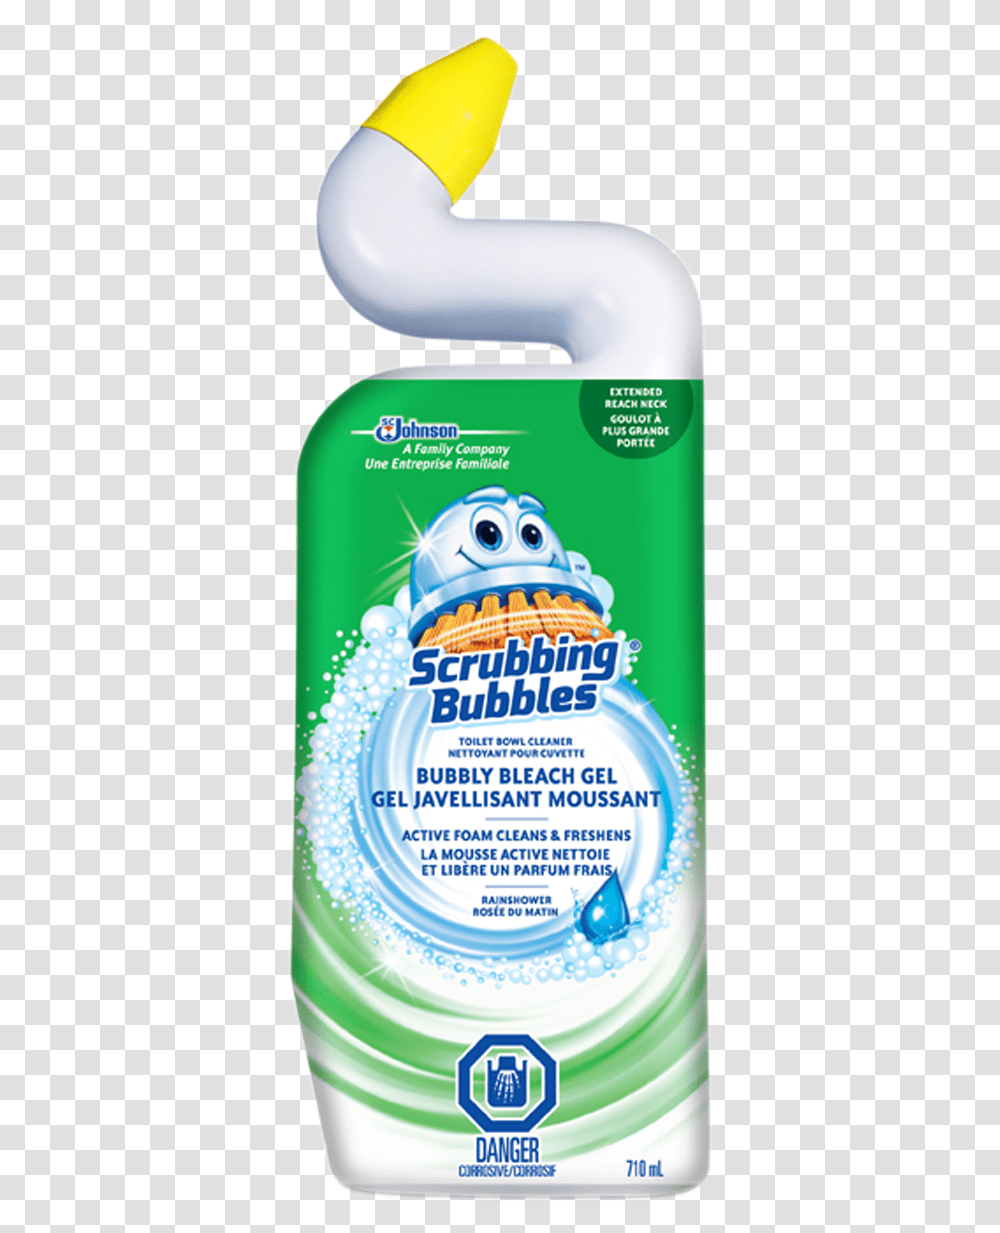 Scrubbing Bubbles Bubbly Bleach Gel Rainshower Scrubbing Bubbles, Poster, Advertisement, Flyer, Paper Transparent Png